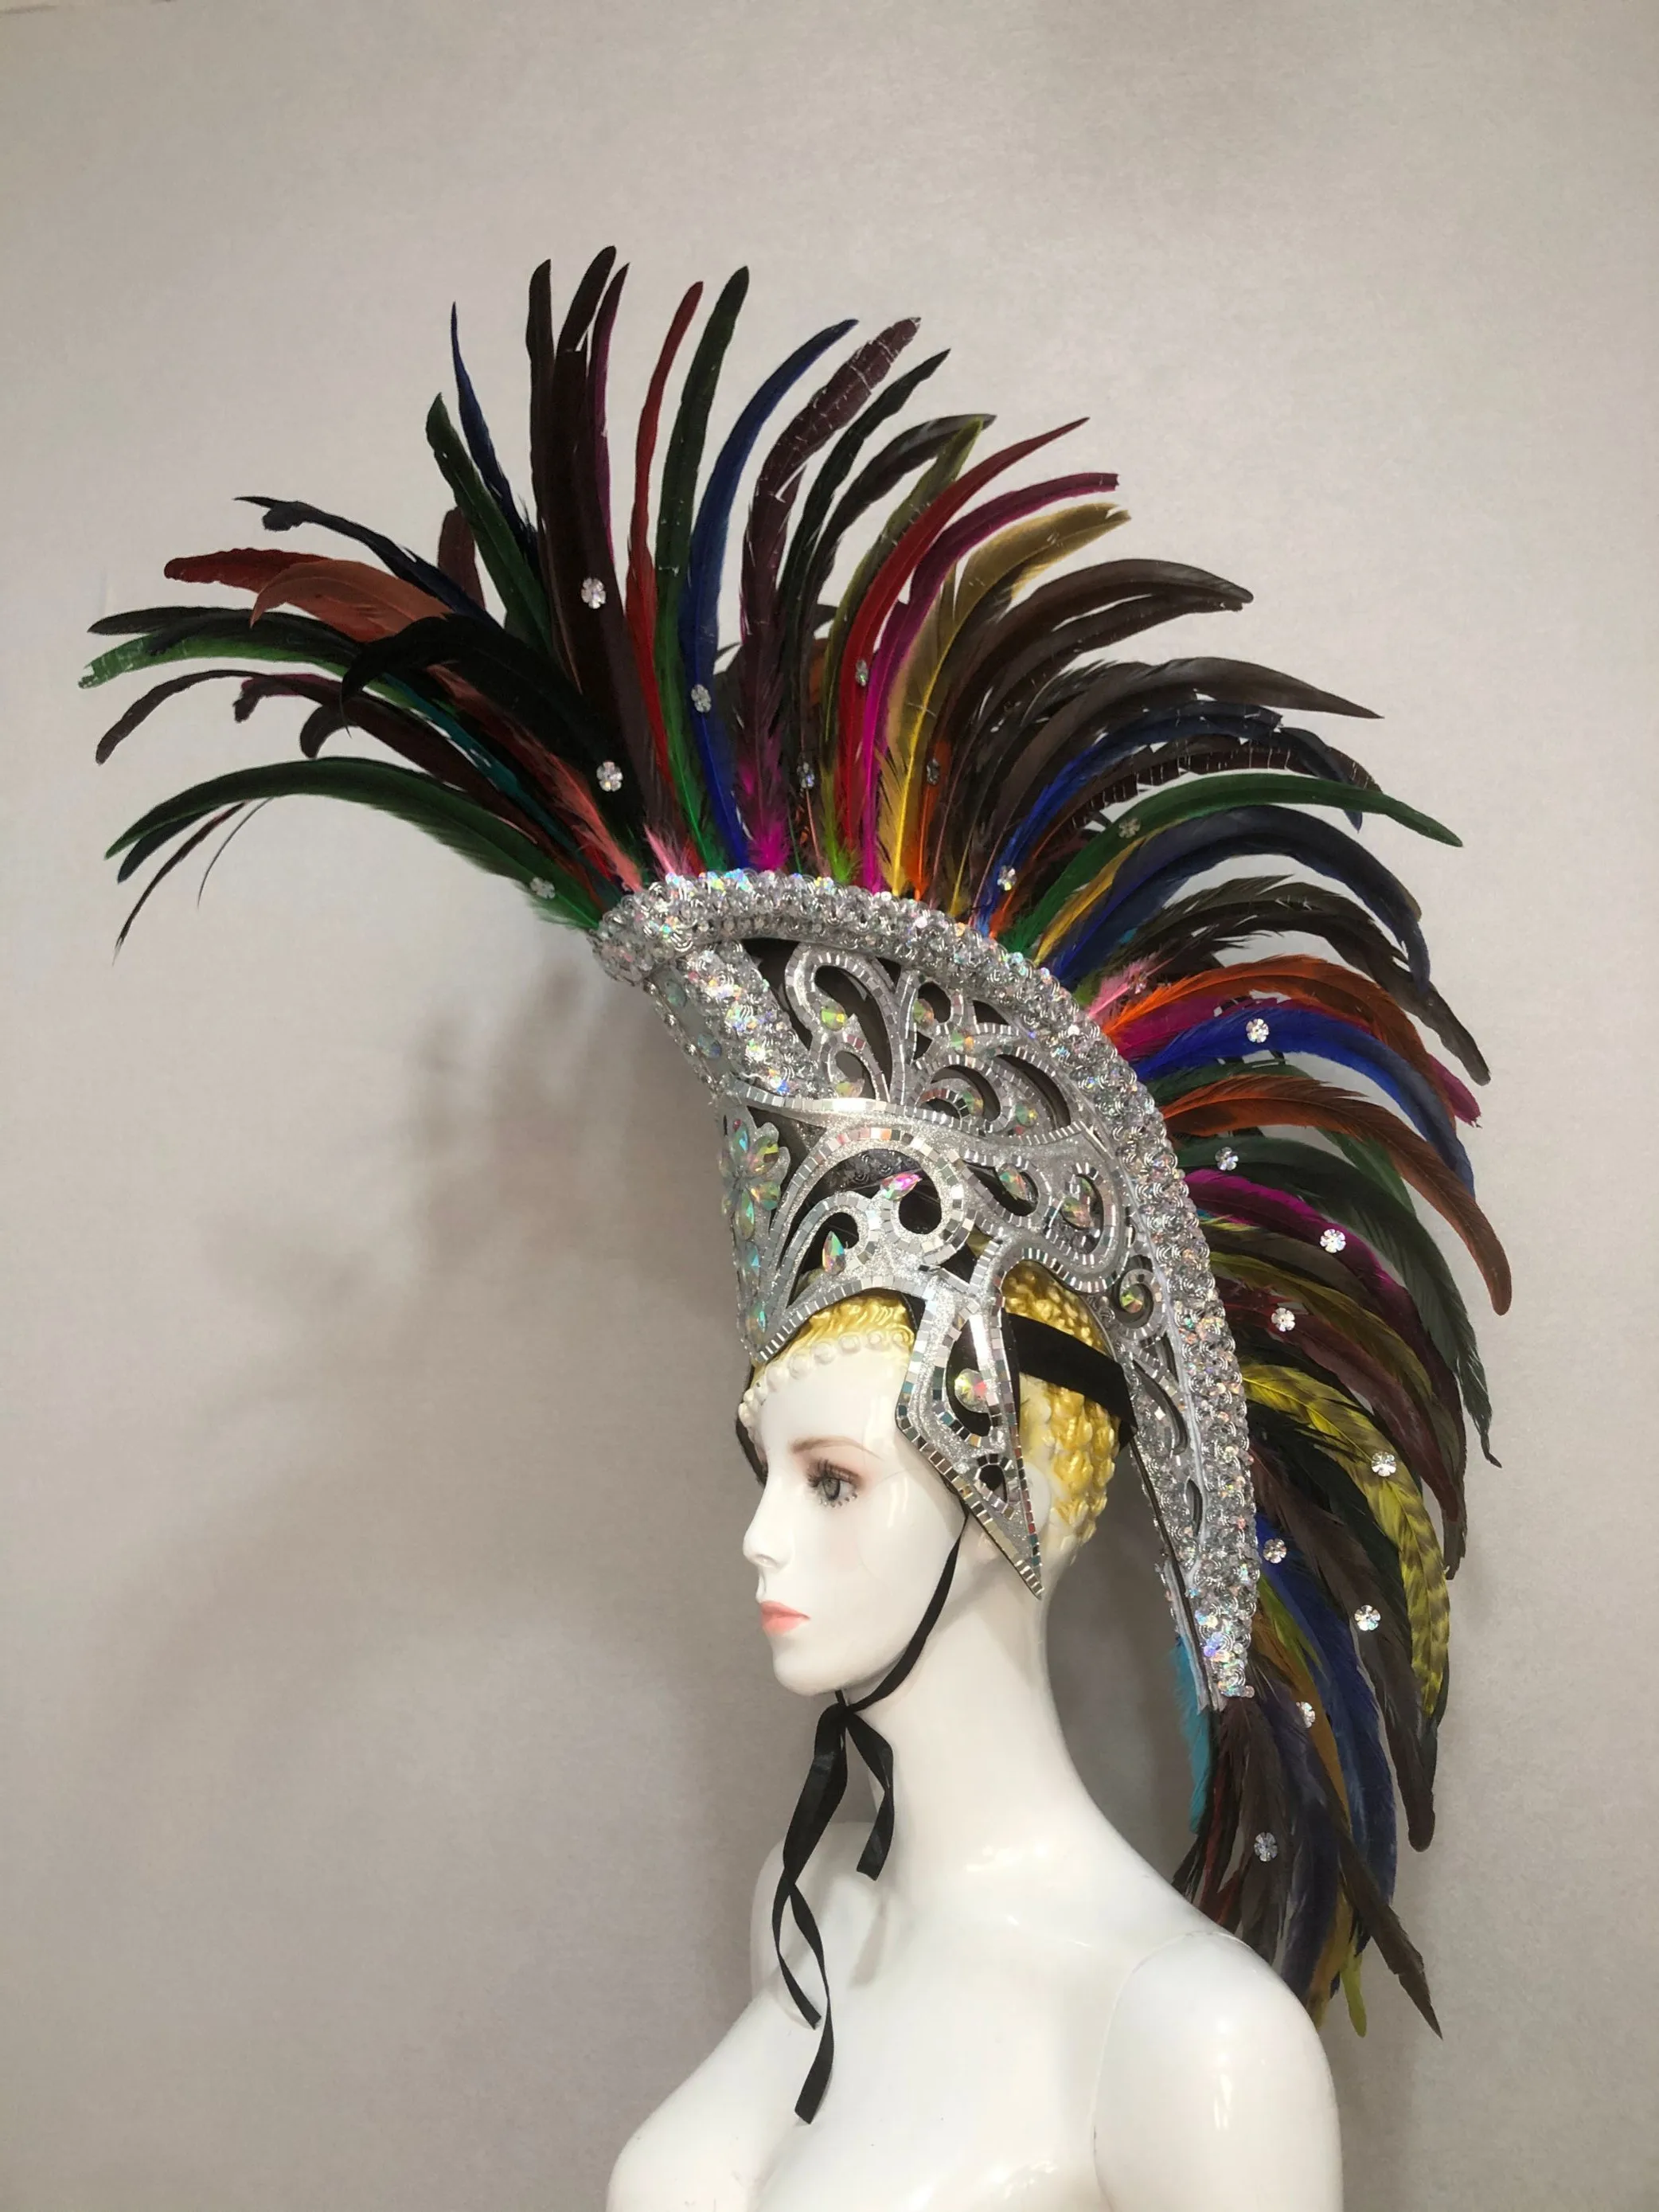 LUOEM La Couronne du Roi Chapeau Chapeau Costume Accessoire Royal Jeweled Couronne Cosplay Mardi Gras Carnaval Party Favors 